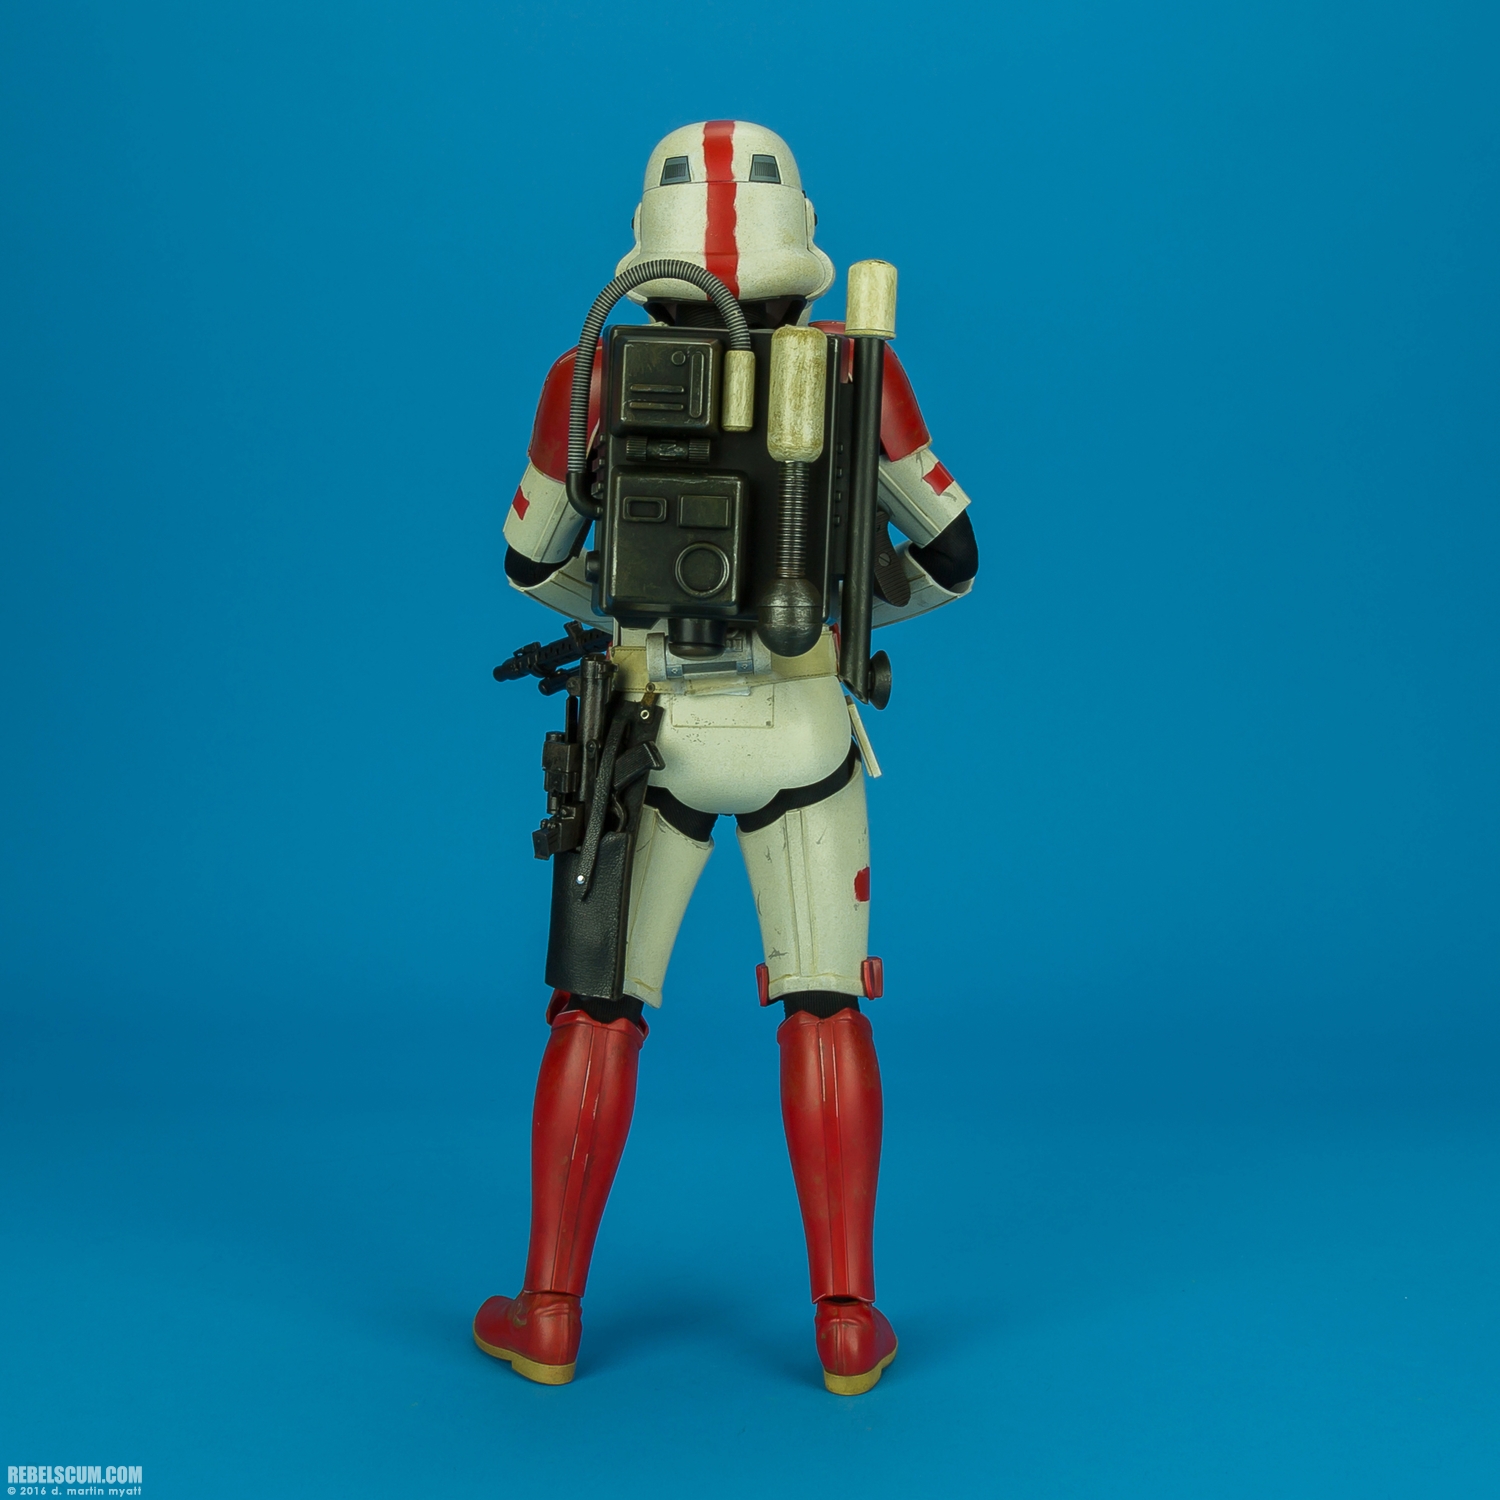 VGM020-Shock-Trooper-Star-Wars-Battlefront-Hot-Toys-008.jpg